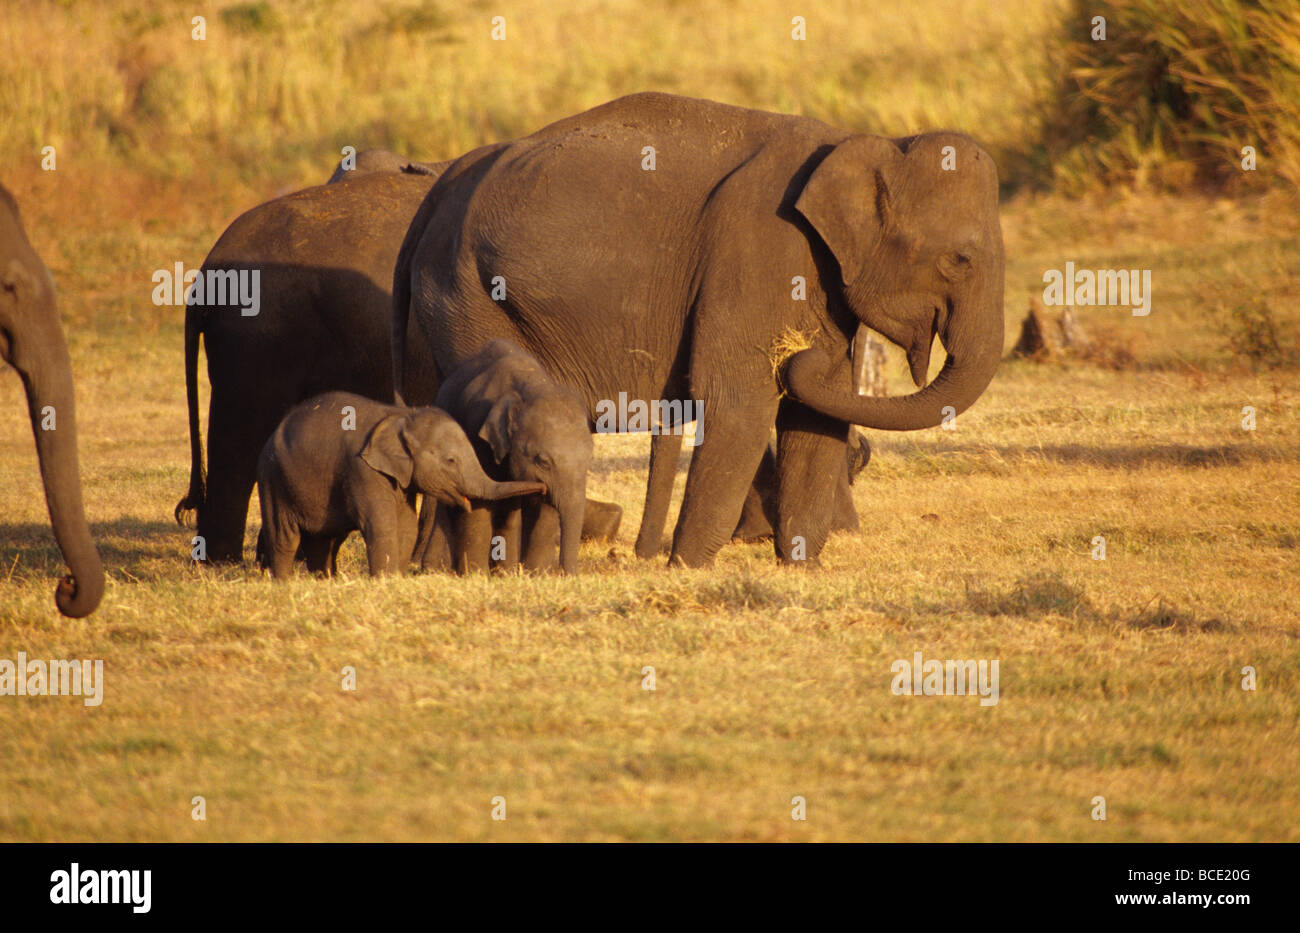 Eine kleine asiatische Elefant Kalb berührt ein anderes Kalb mit seinem Stamm. Stockfoto